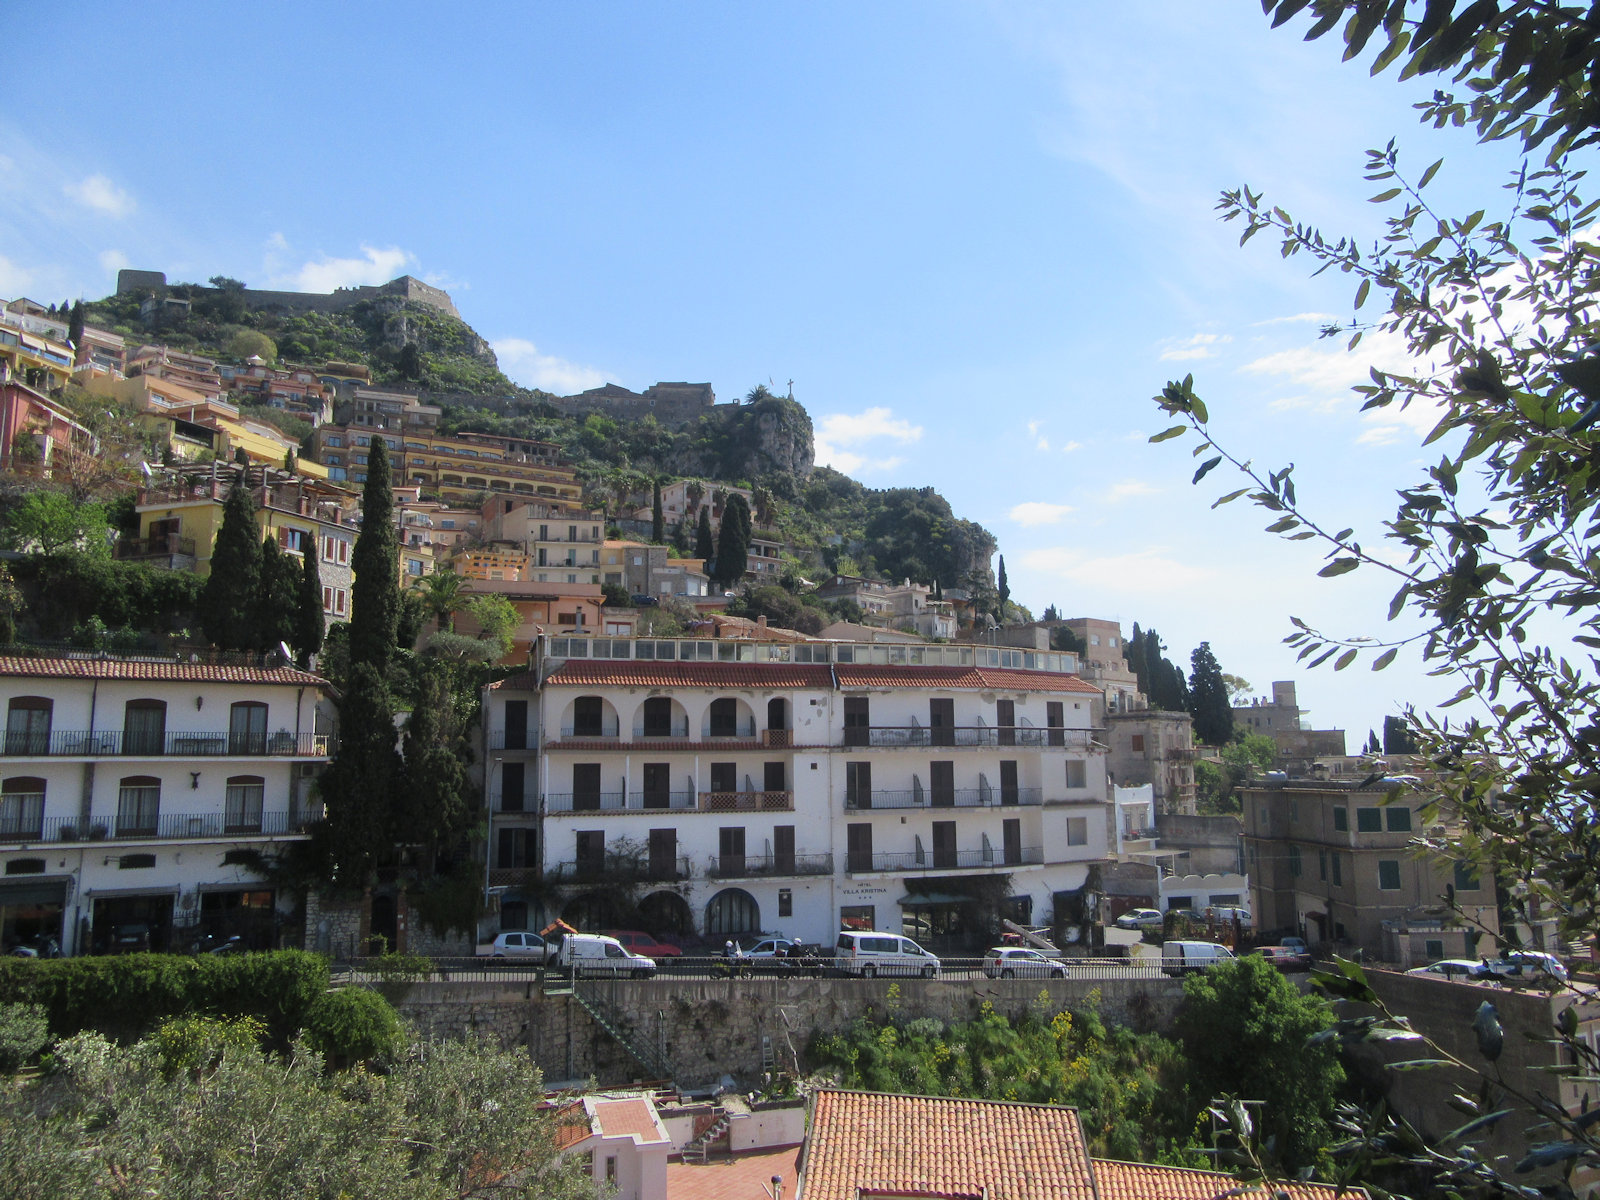 Blick auf das Kastell auf dem Monte Tauro oberhalb von Taormina, das Santuario Madonna della Rocca (mit dem Kreuz) und die heutigen südlichen Ausläufe der Stadt